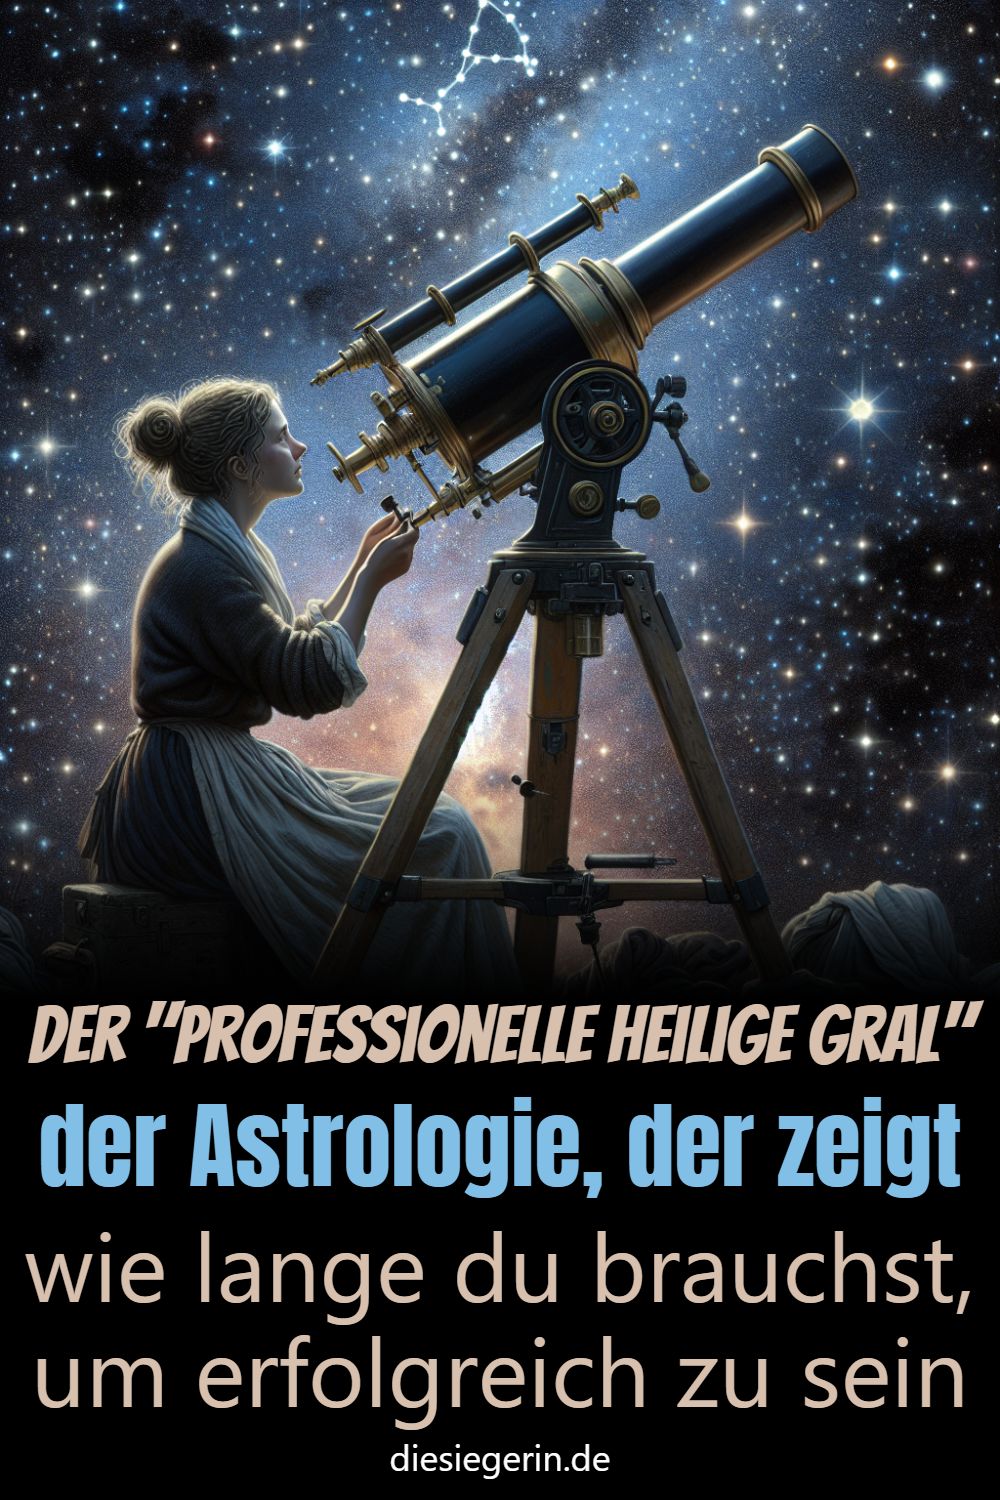 Der "professionelle Heilige Gral" der Astrologie, der zeigt wie lange du brauchst, um erfolgreich zu sein